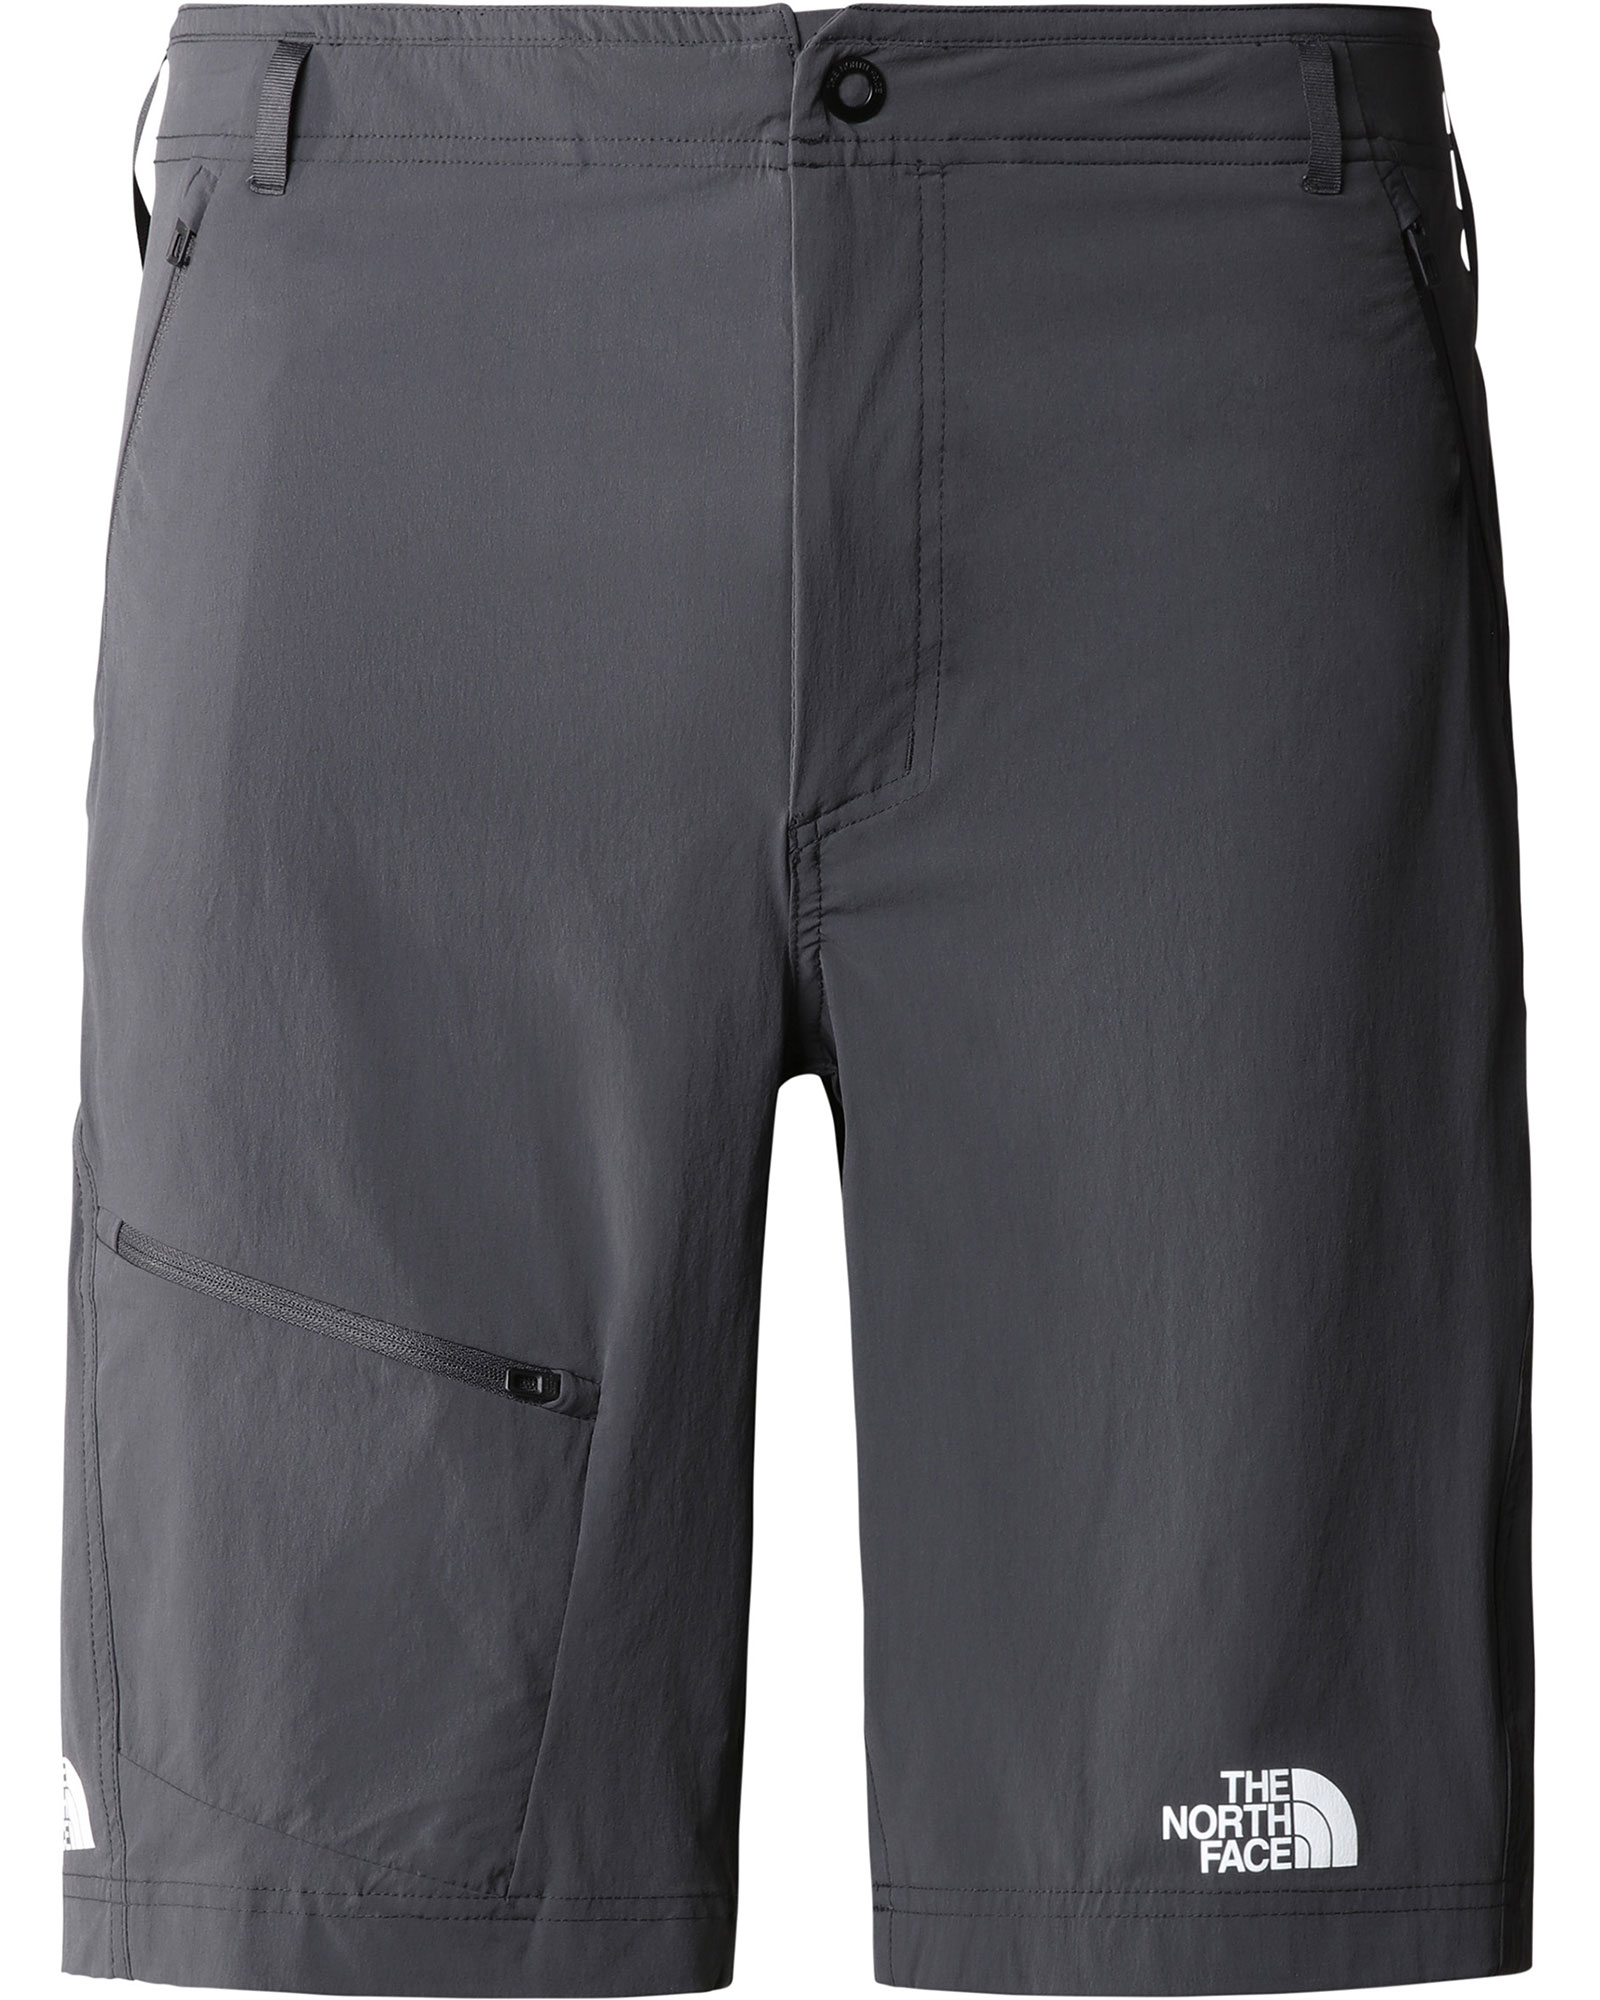 The North Face Men’s Speedlight Slim Tapered Shorts - Asphalt Grey EU 32